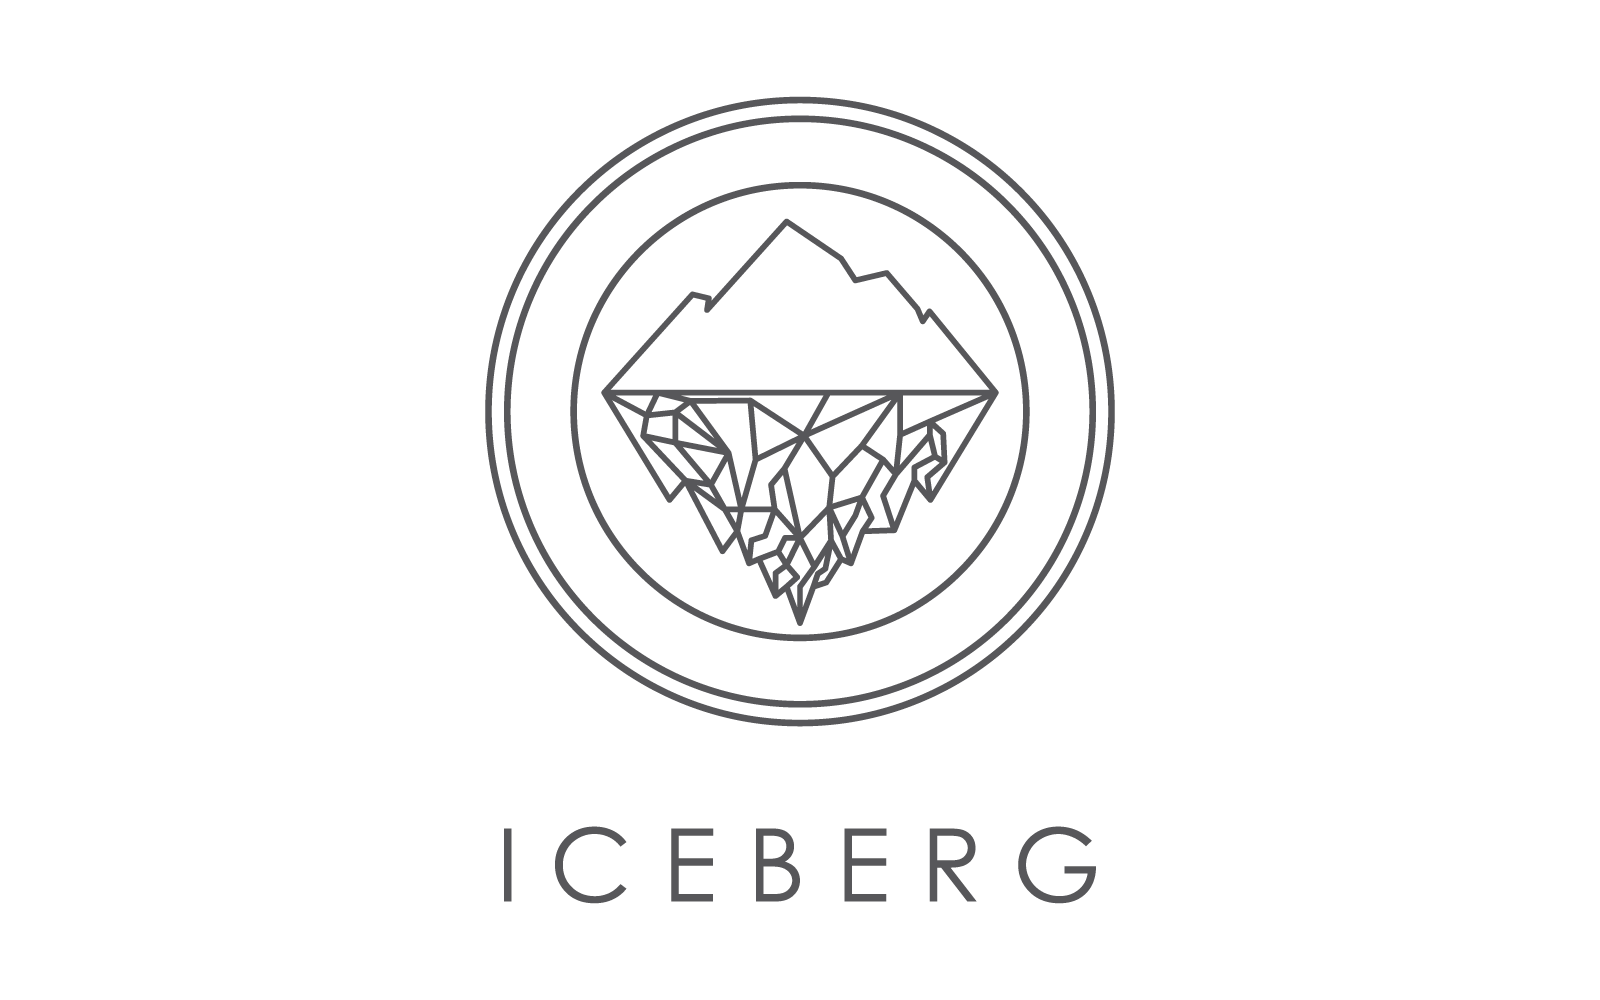 Iceberg line illustration logo vector design Logo Template